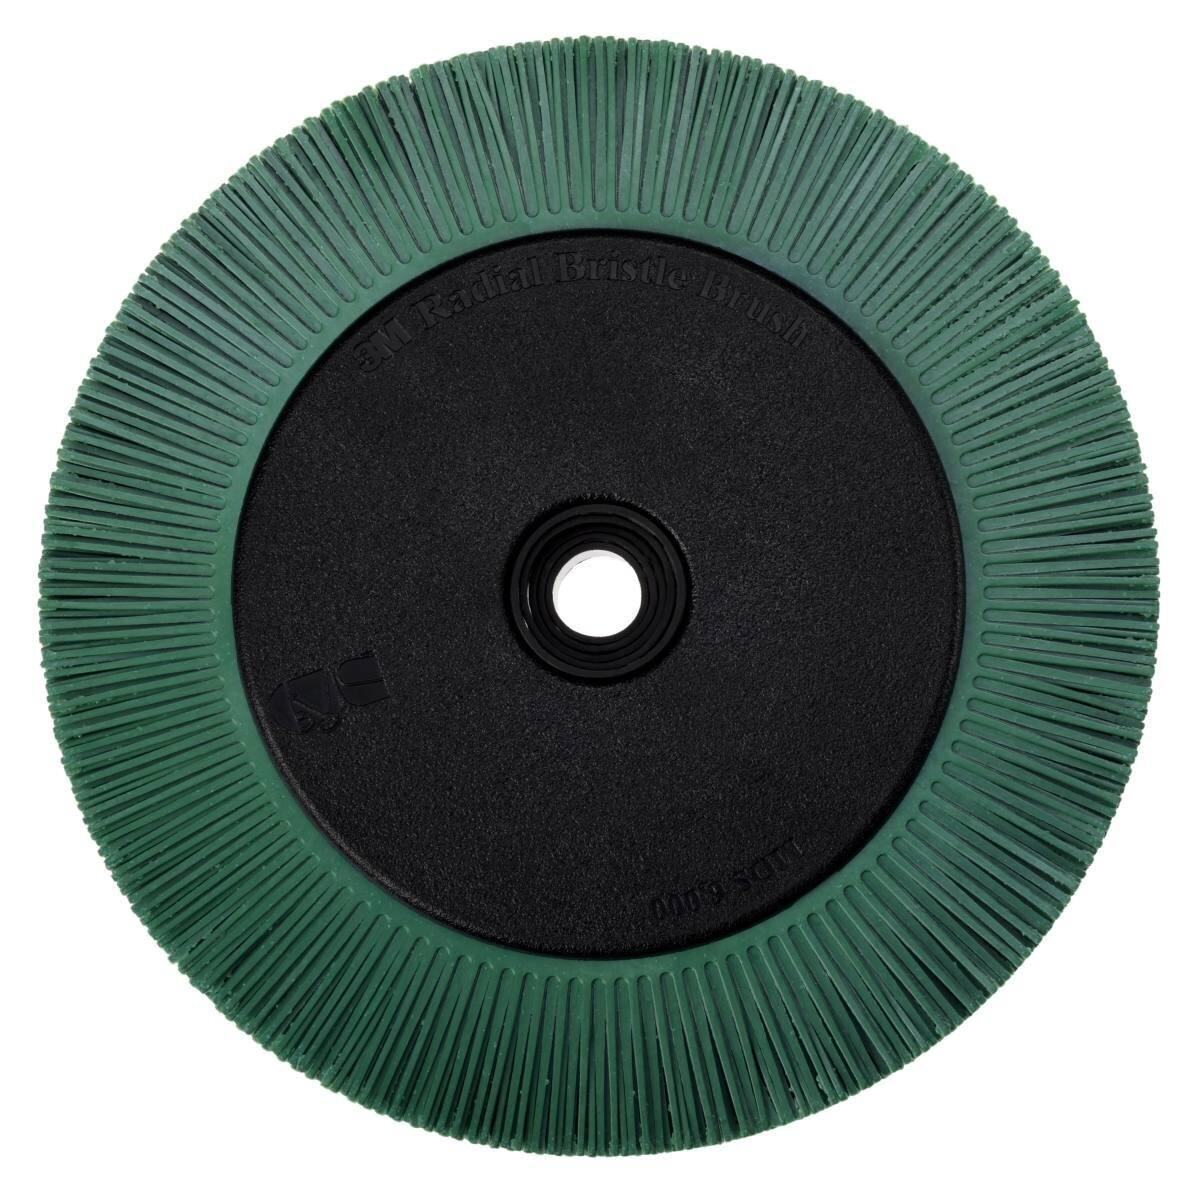 3M Scotch-Brite Radial Bristle Disc BB-ZB mit Flansch, grün, 203,2 mm, P50, Typ S #33081